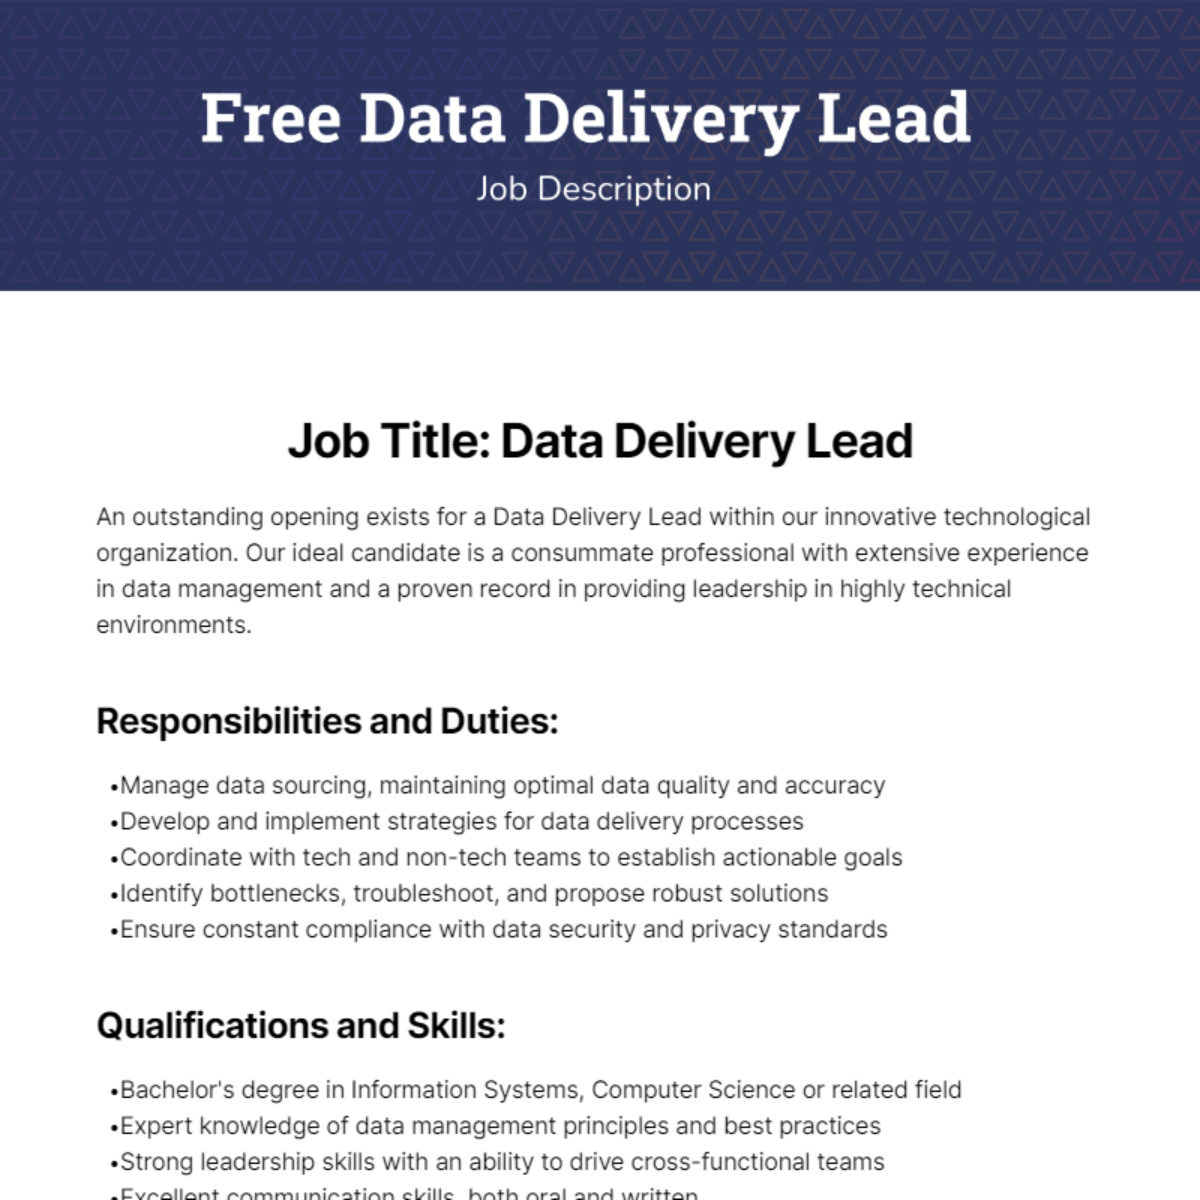 Free Data Delivery Lead Job Description Template